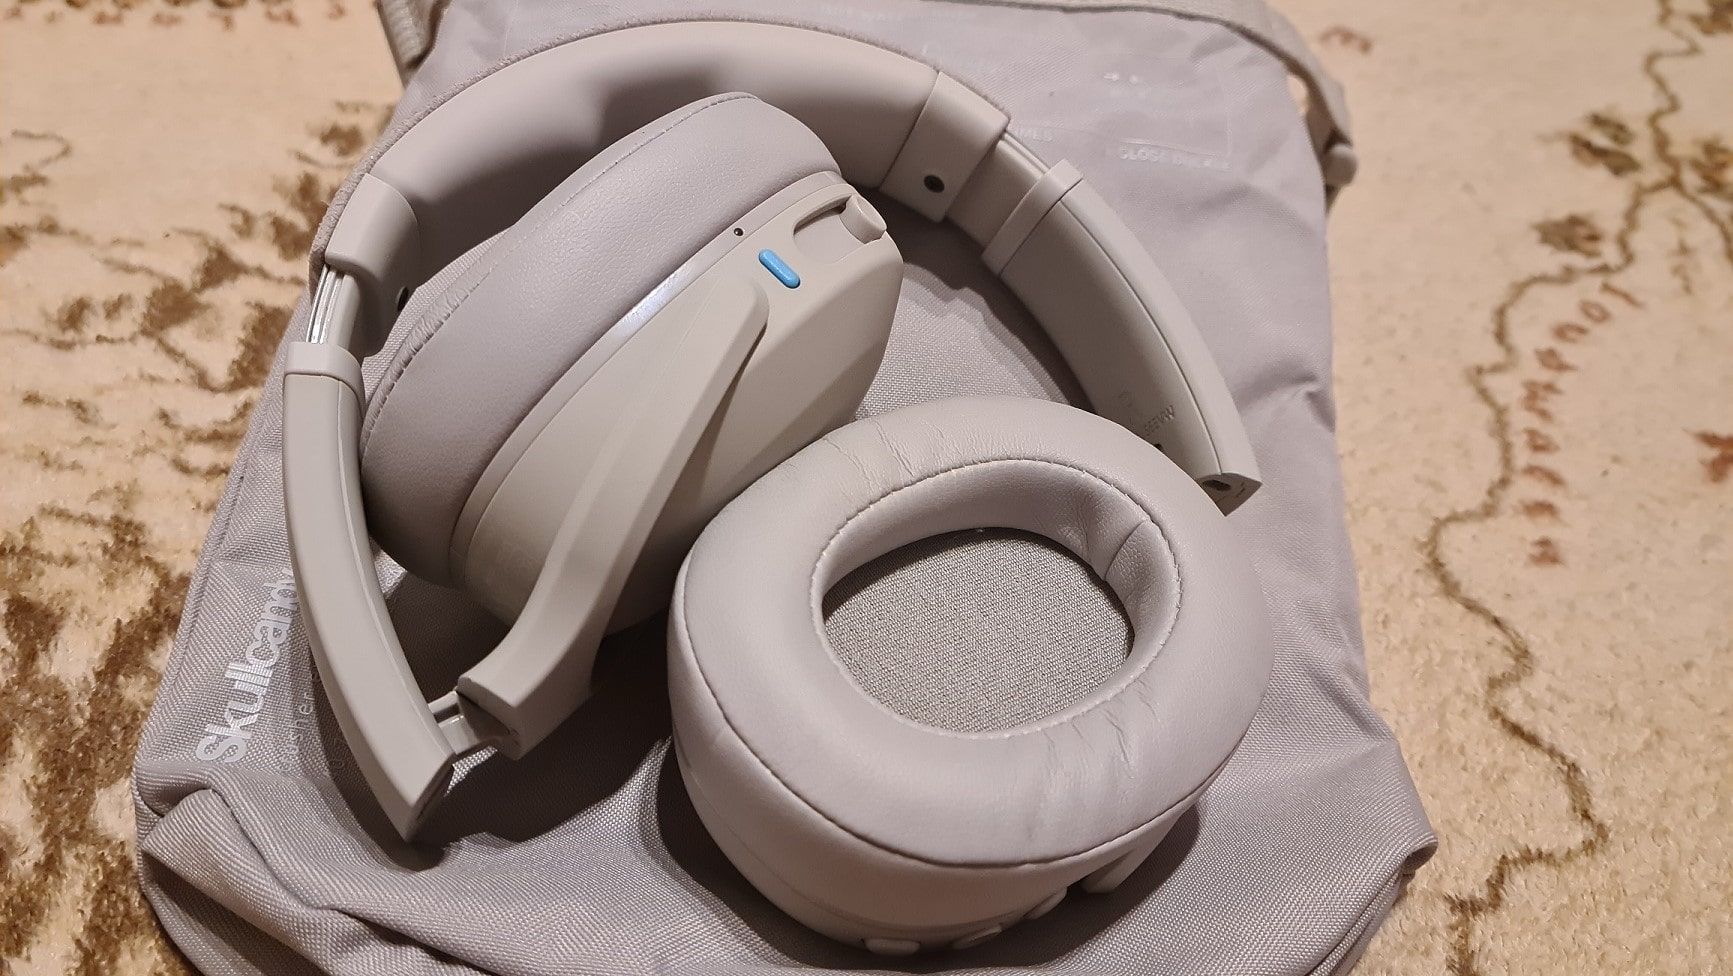 Zu sehen sind die Crusher Evo Kopfhörer – die Ohrmuscheln sind zum Teil eingeklappt, sodass die Kopfhörer leicht in die Transporttasche passen. 